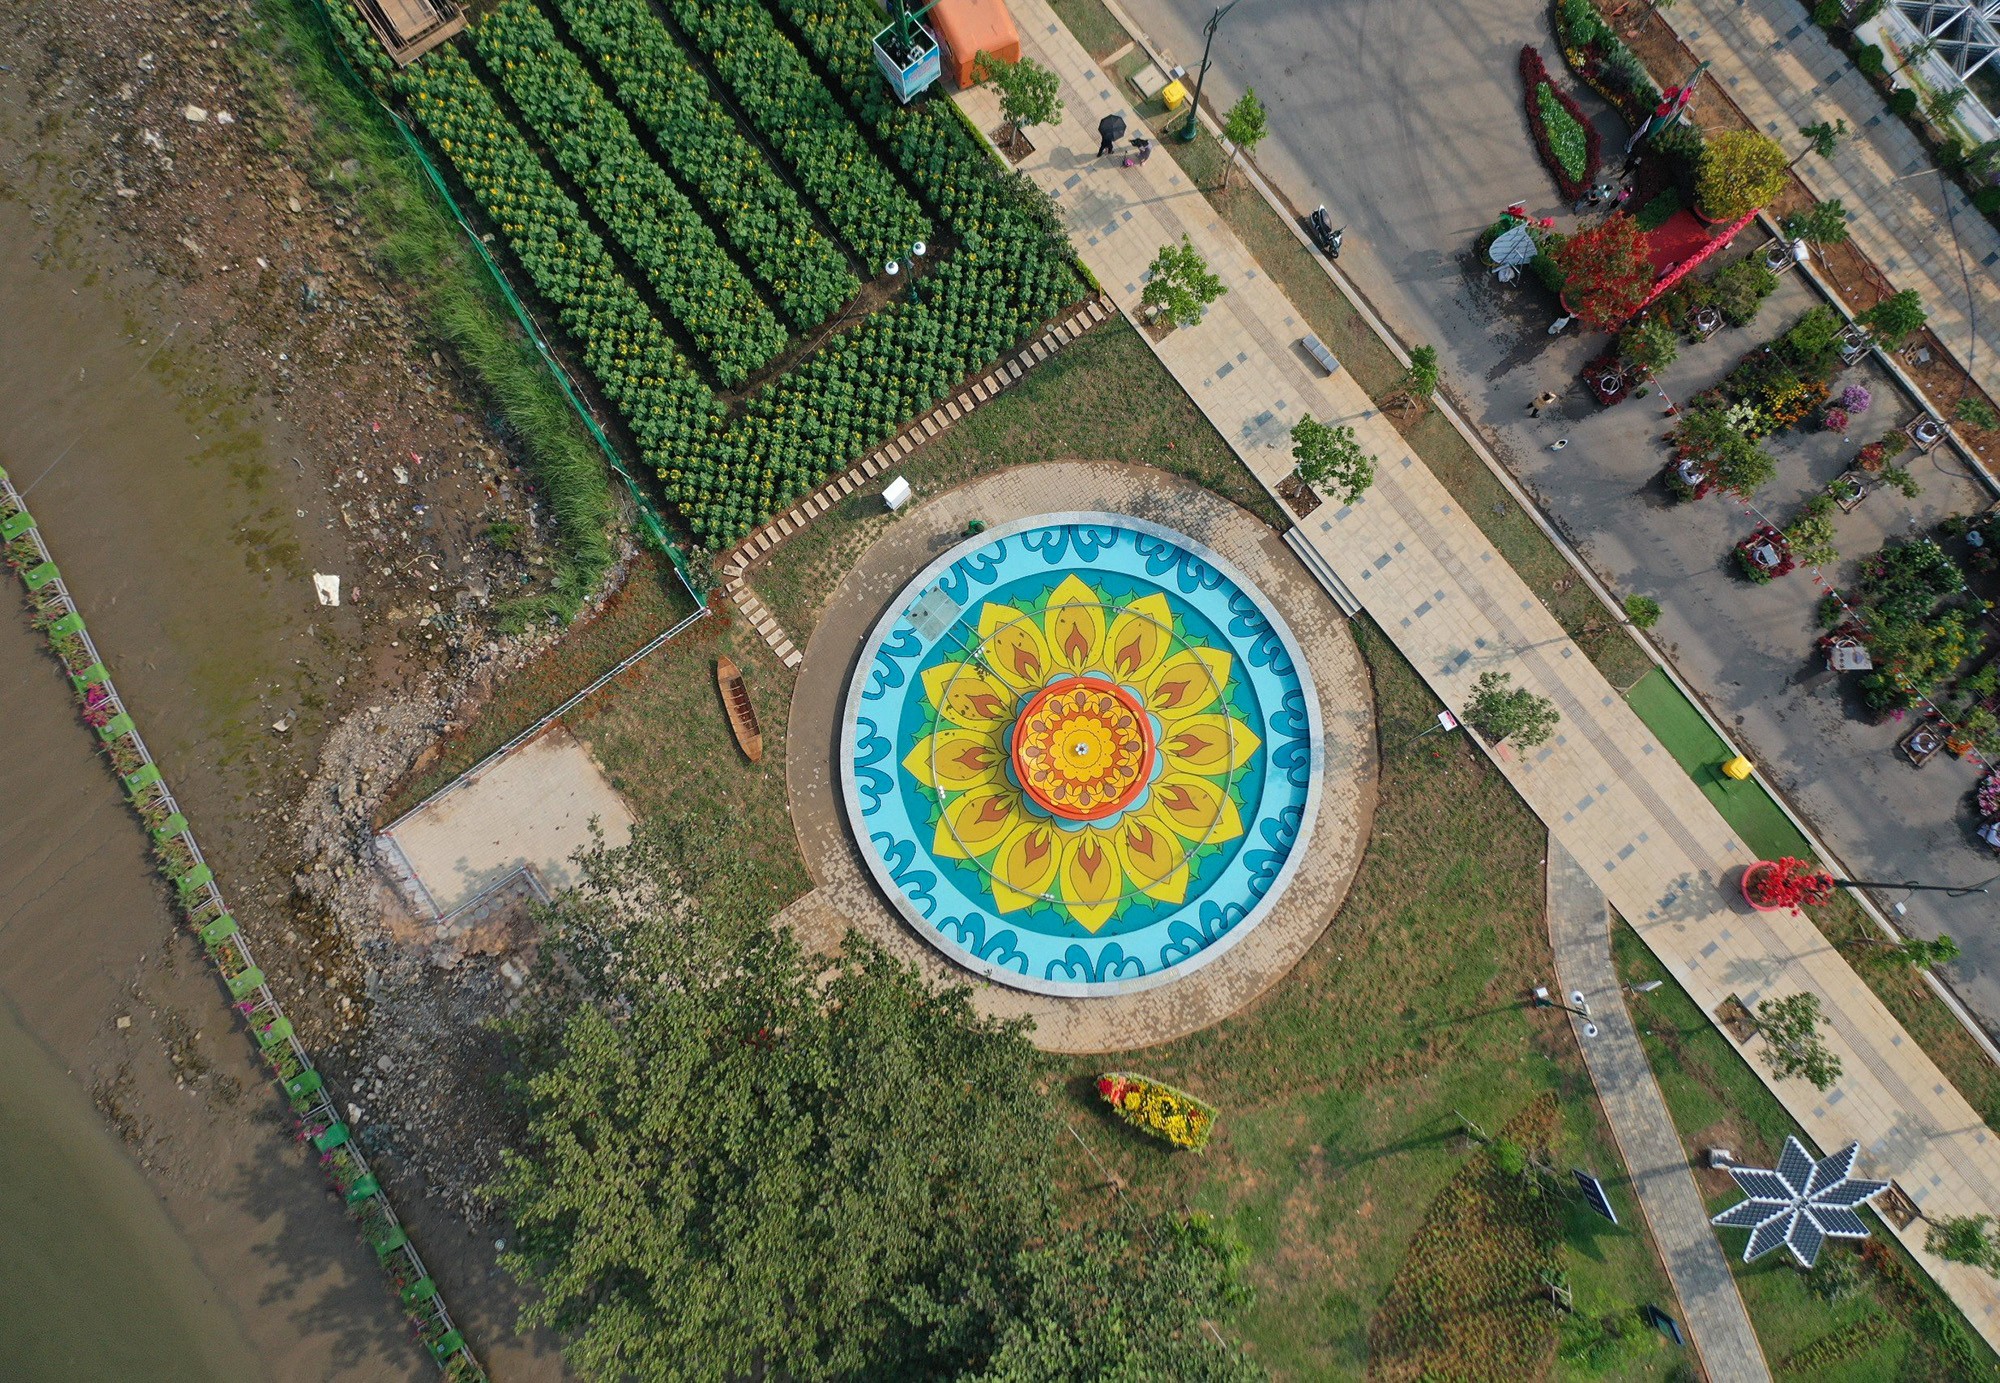 Nằm sát bờ sông Sài Gòn, khu vực bến tàu cũ giữa công viên, hạng mục mới đài phun nước đã hoàn thành và đưa vào hoạt động. Đài phun nước được thiết kế hình tròn, ở giữa vẽ hoa văn hình hoa hướng dương cùng nhiều hoạ tiết khác.